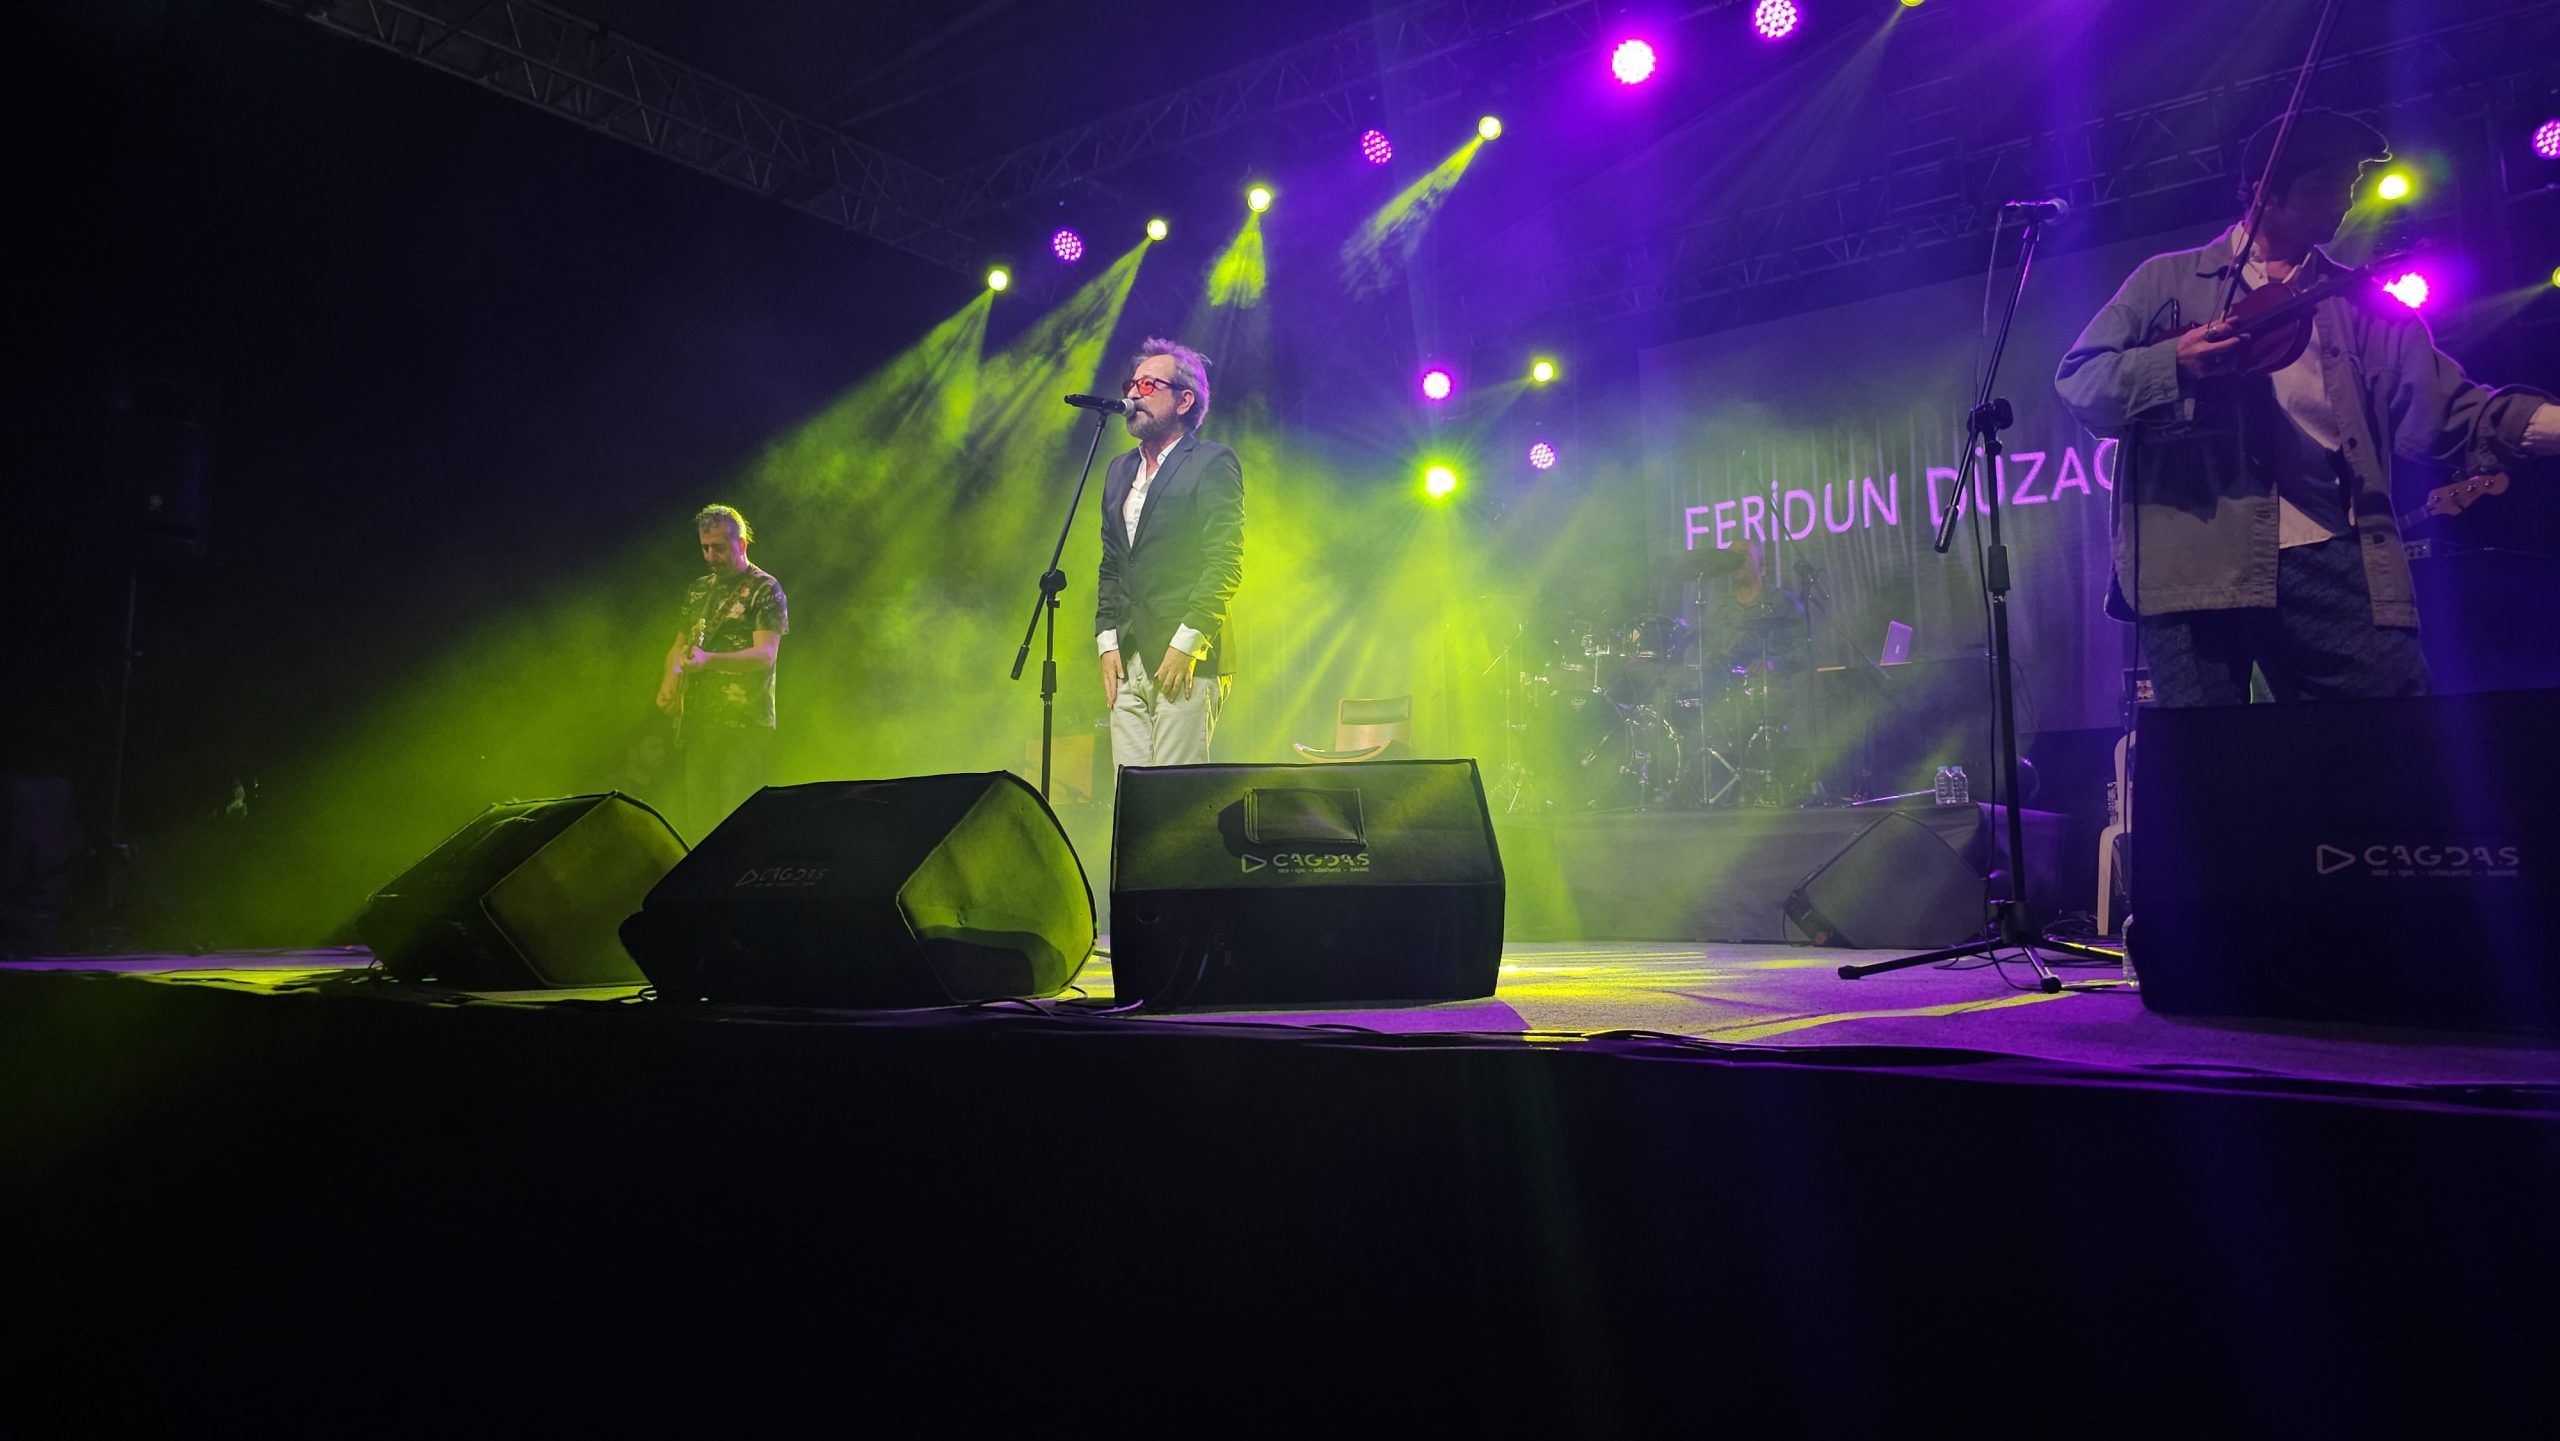 Bandırma’da Cumhuriyet coşkusu Feridun Düzağaç konseri ile devam etti